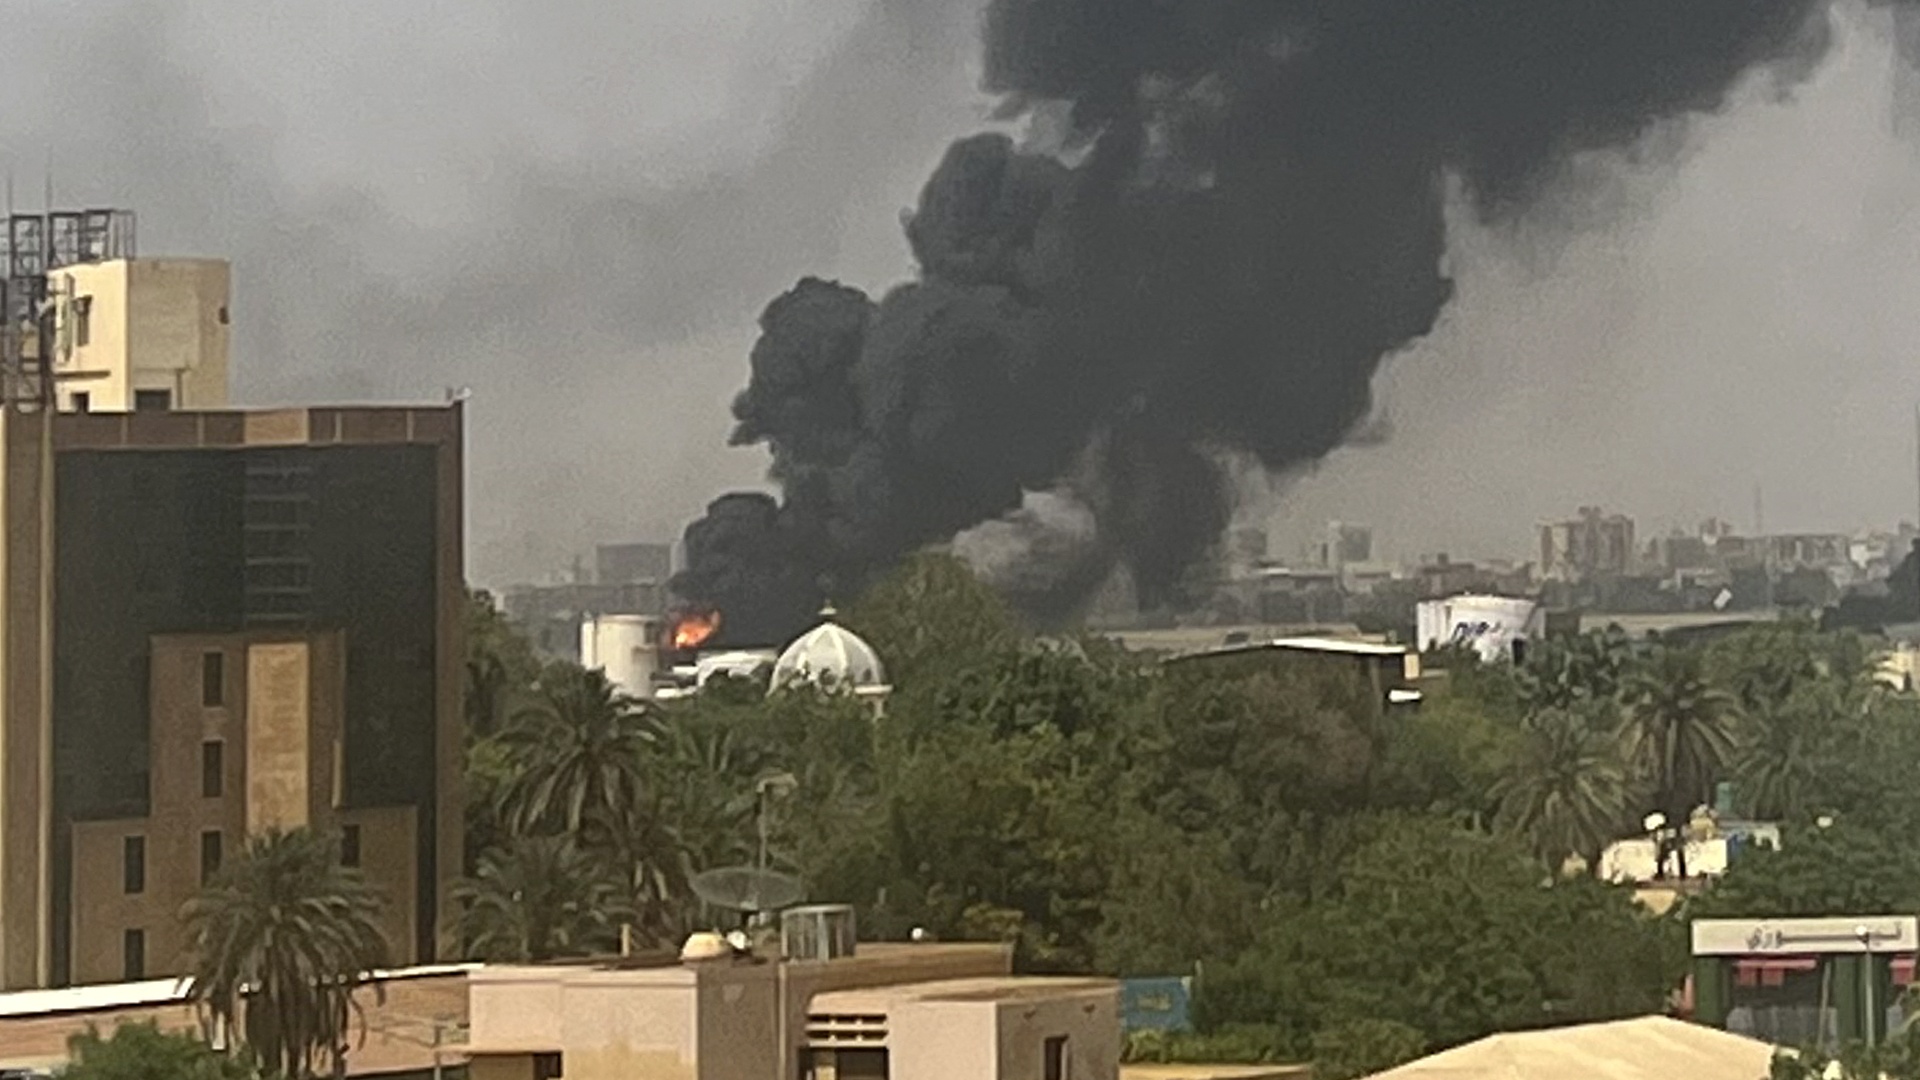 В Судане обстреляли конвой с дипломатами США